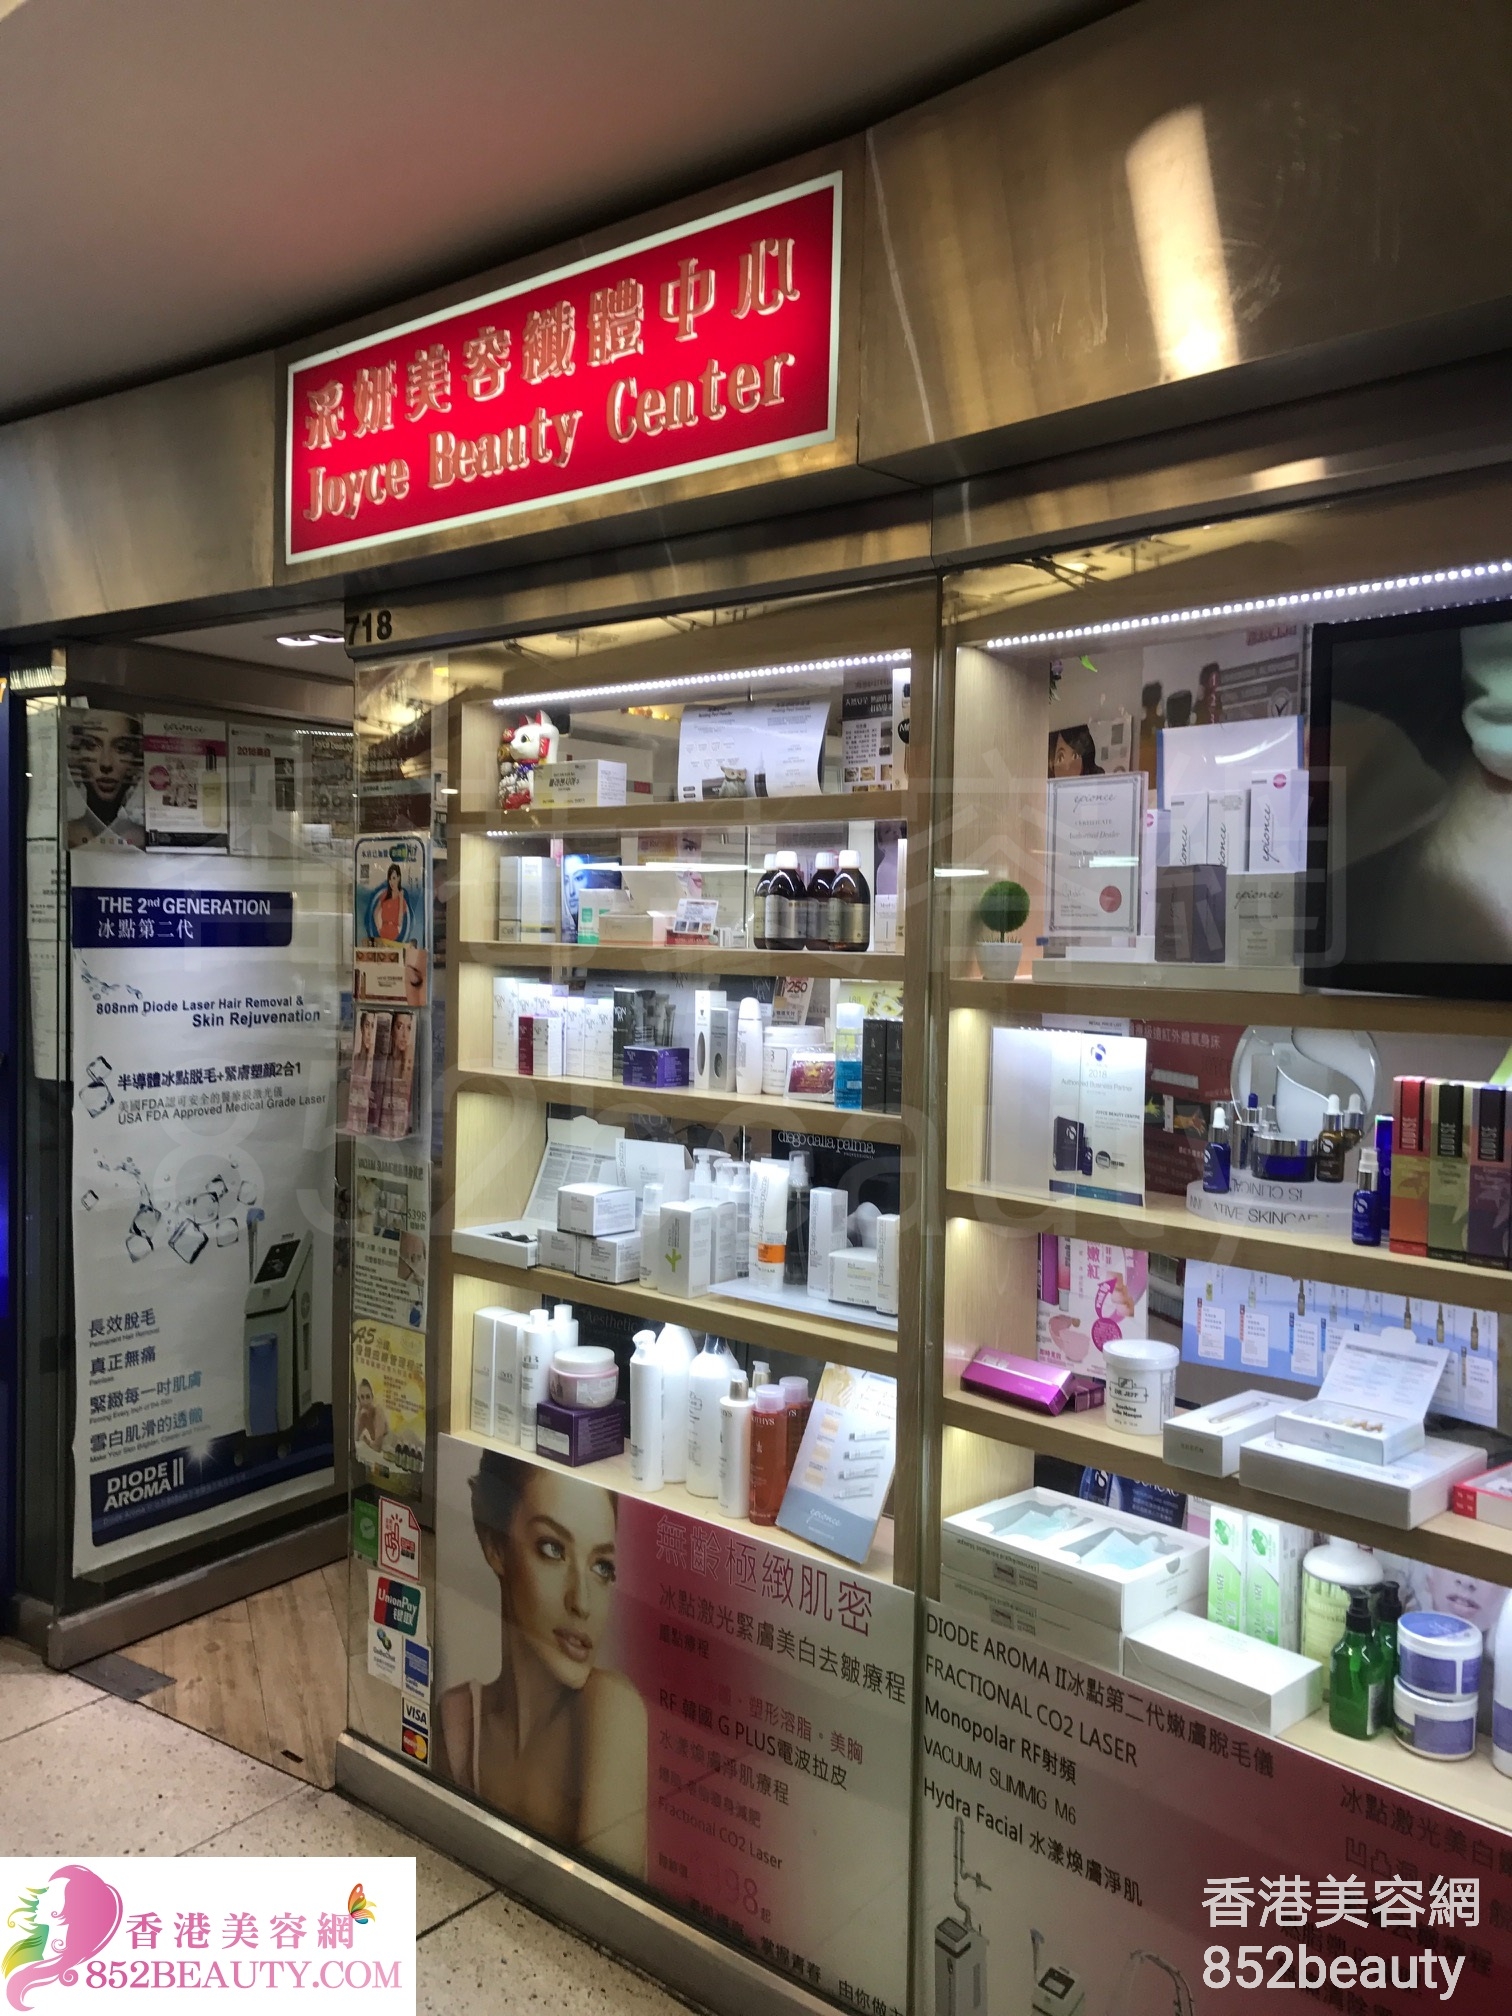 美容院: 采妍美容纖體中心 Joyce Beauty Center (西九龍中心)